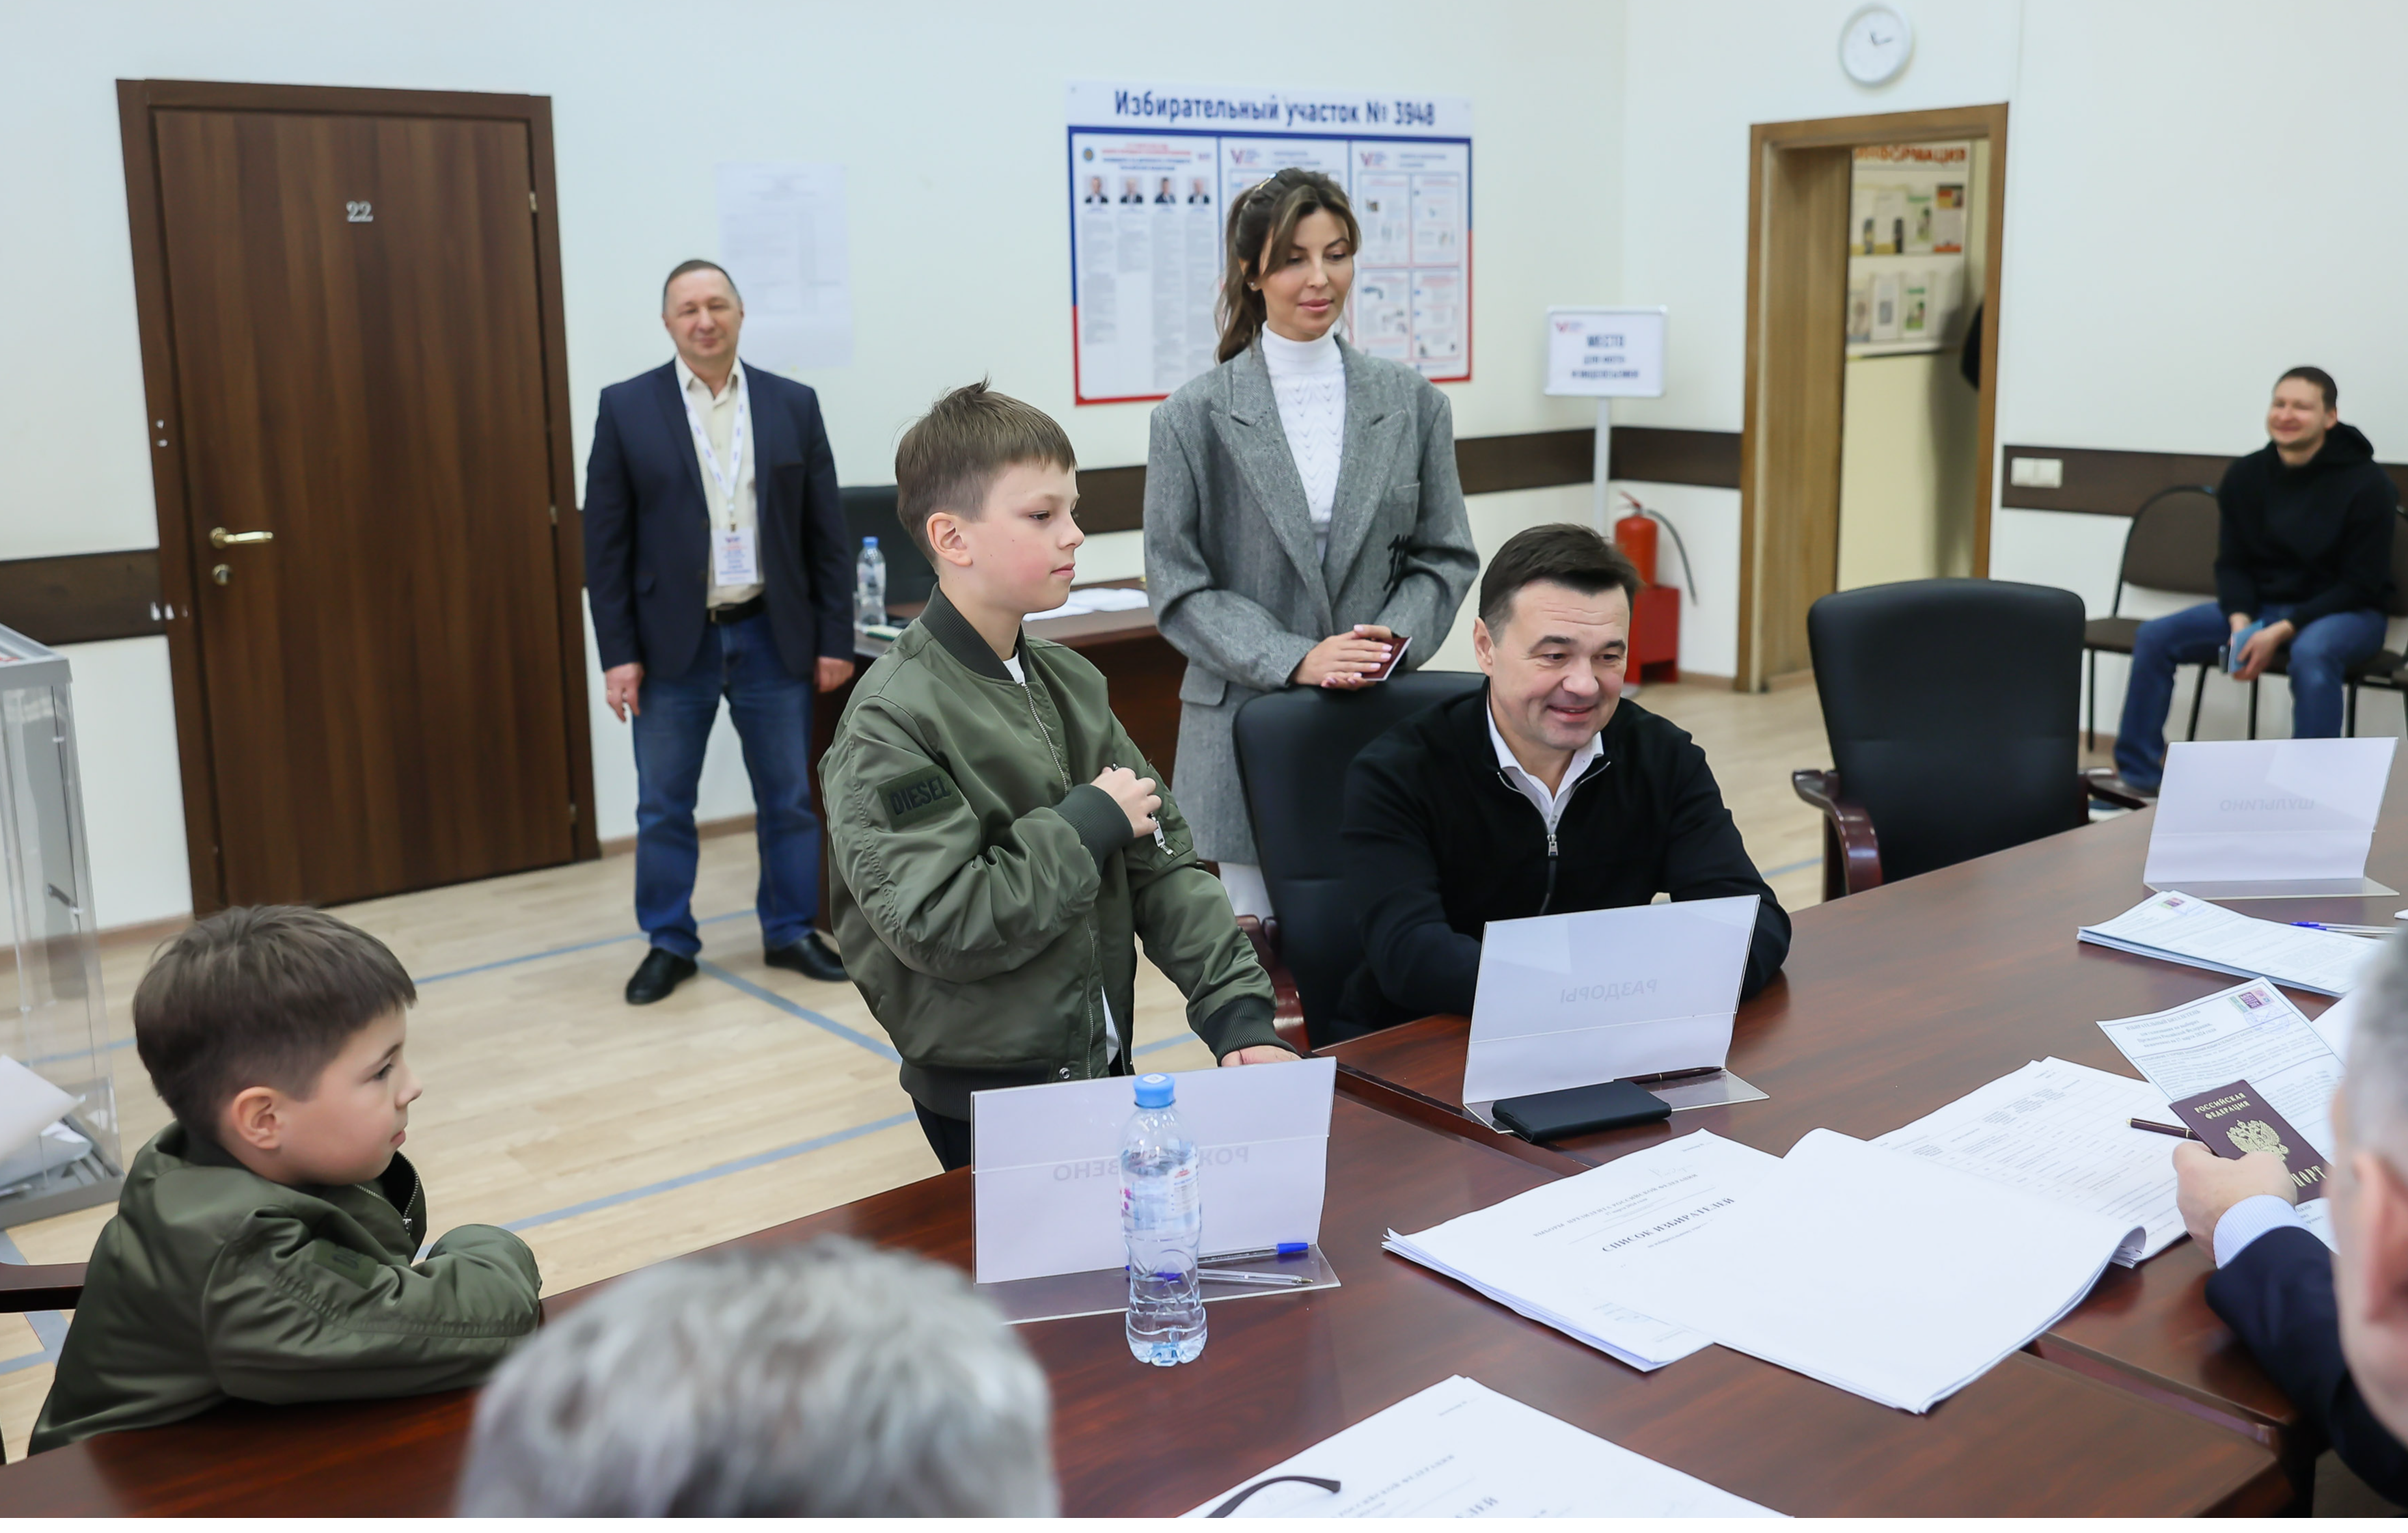 Андрей Воробьев проголосовал вместе с семьей на избирательном участке в Одинцовском округе